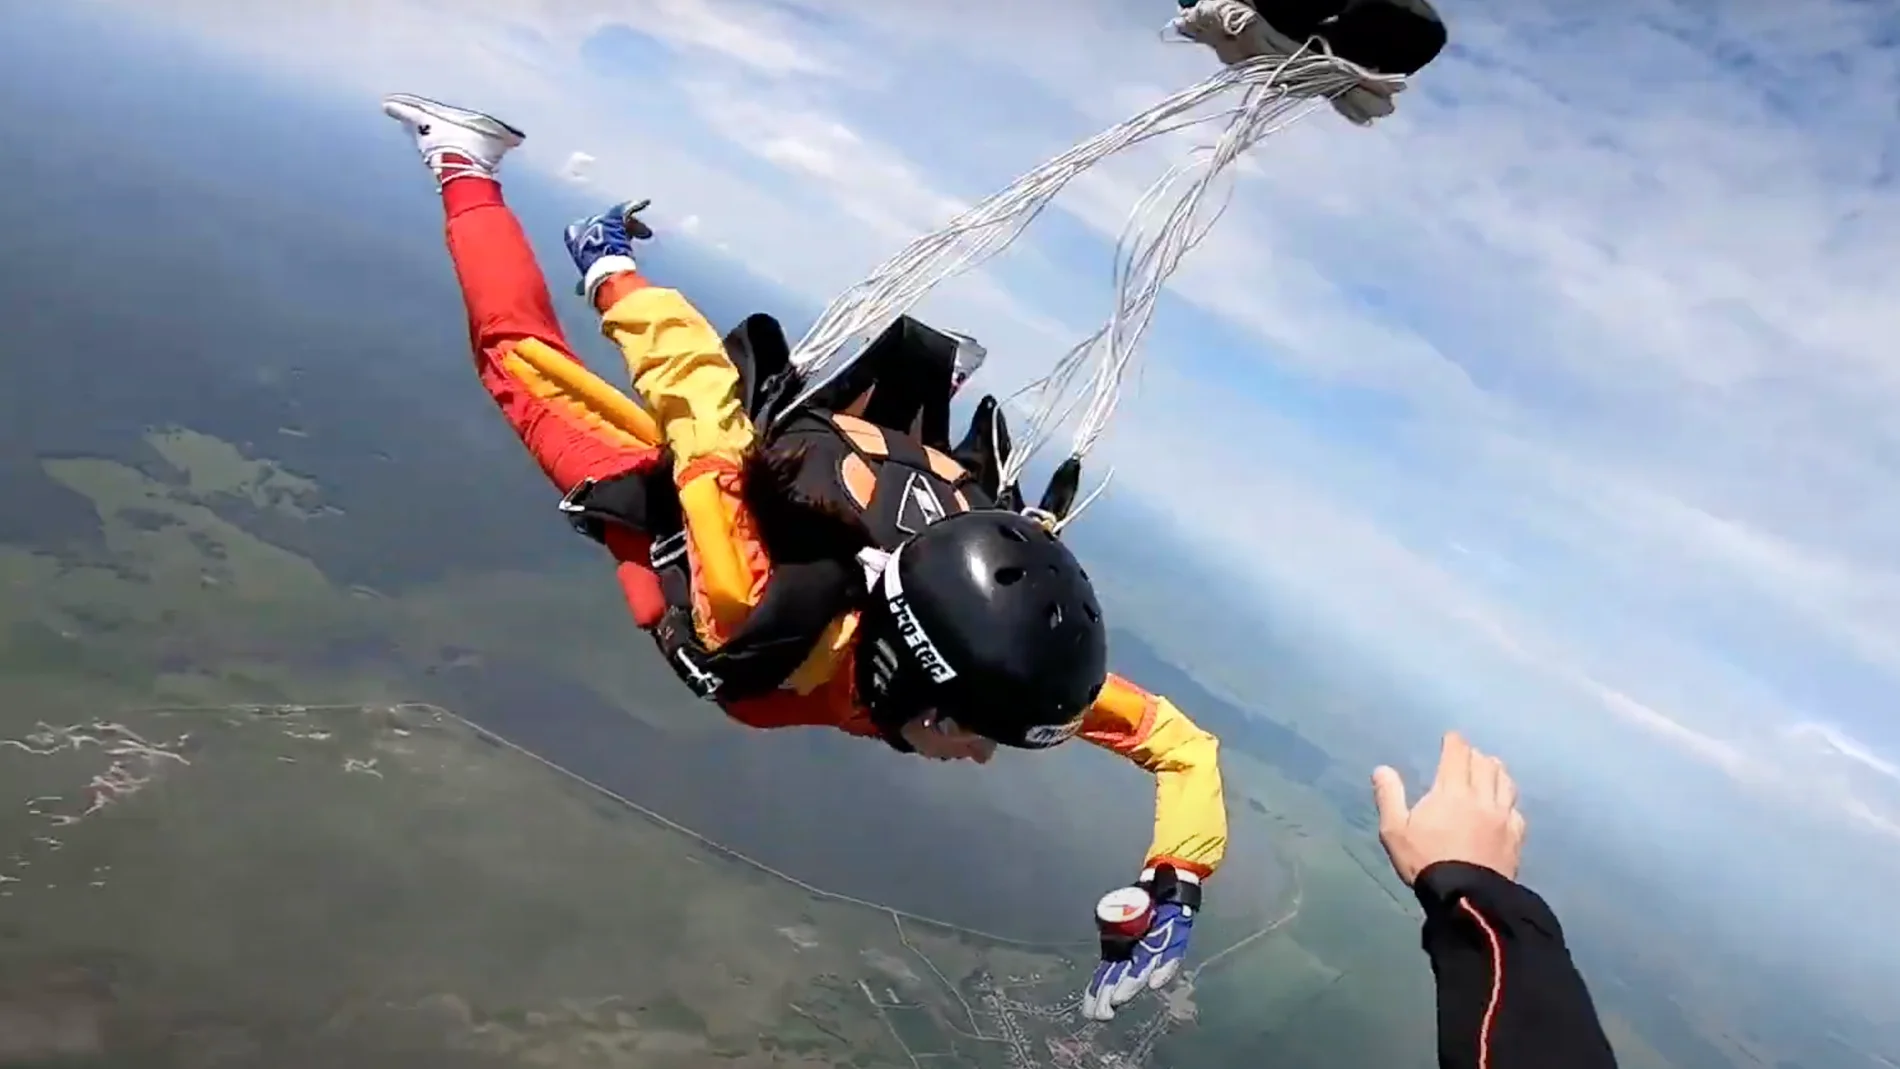 Mujer en caída libre a 200 km/h rescatada por su instructor de paracaidismo